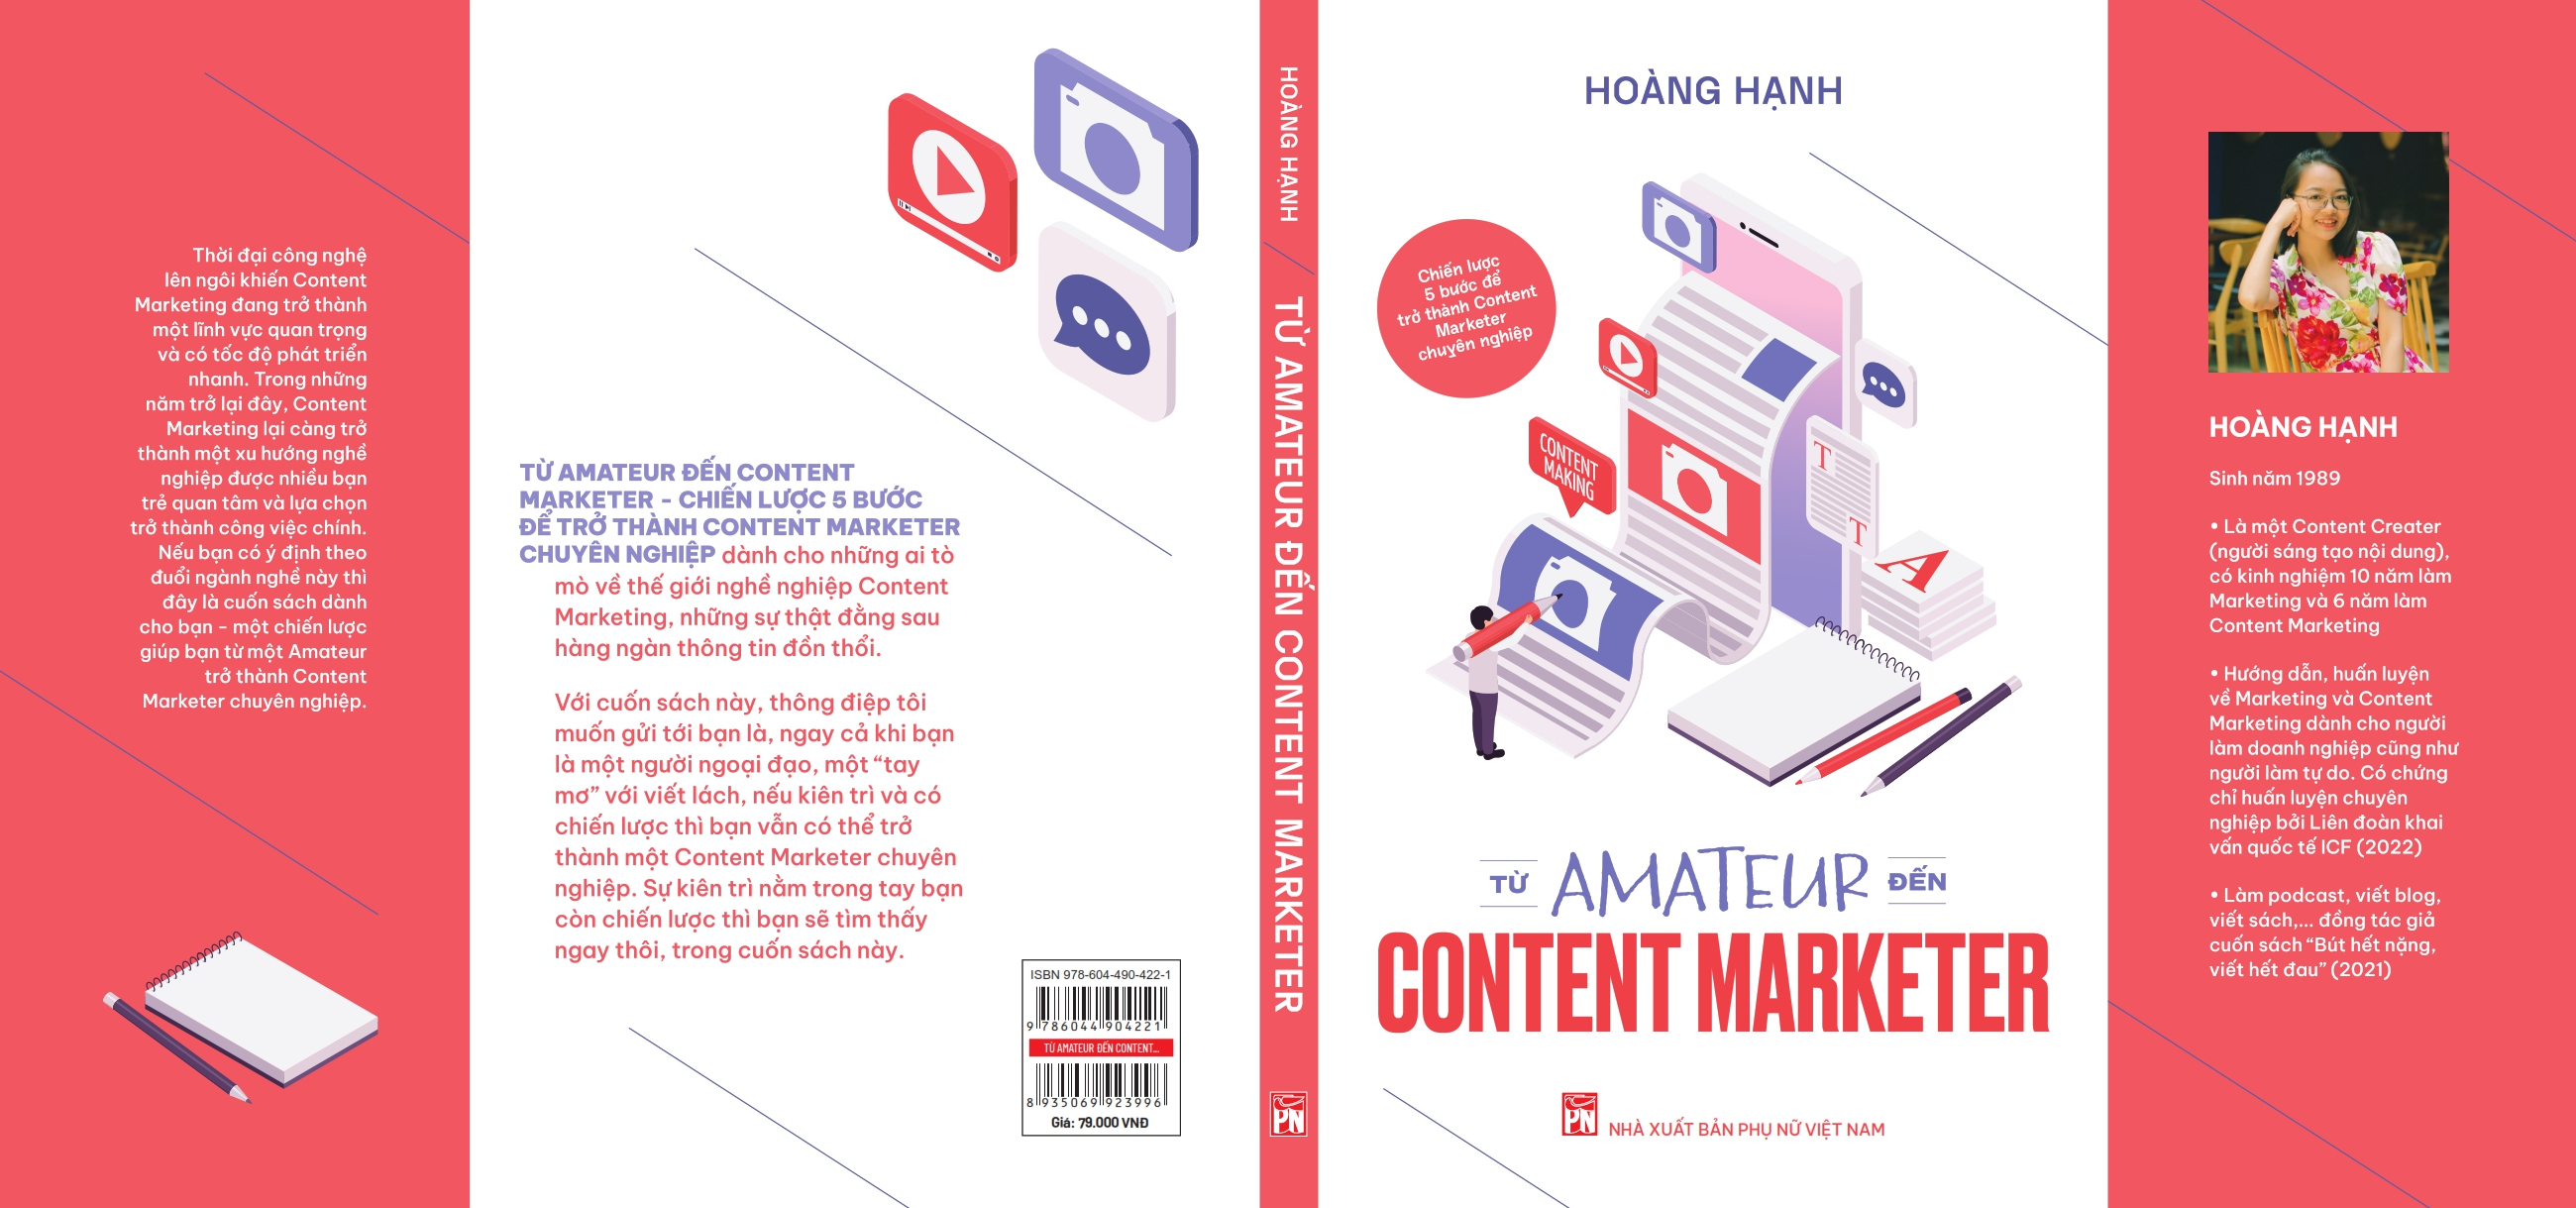 Hình ảnh TỪ AMATEUR ĐẾN CONTENT MARKETER - Bí quyết để trở thành một người làm Content Marketing chuyên nghiệp